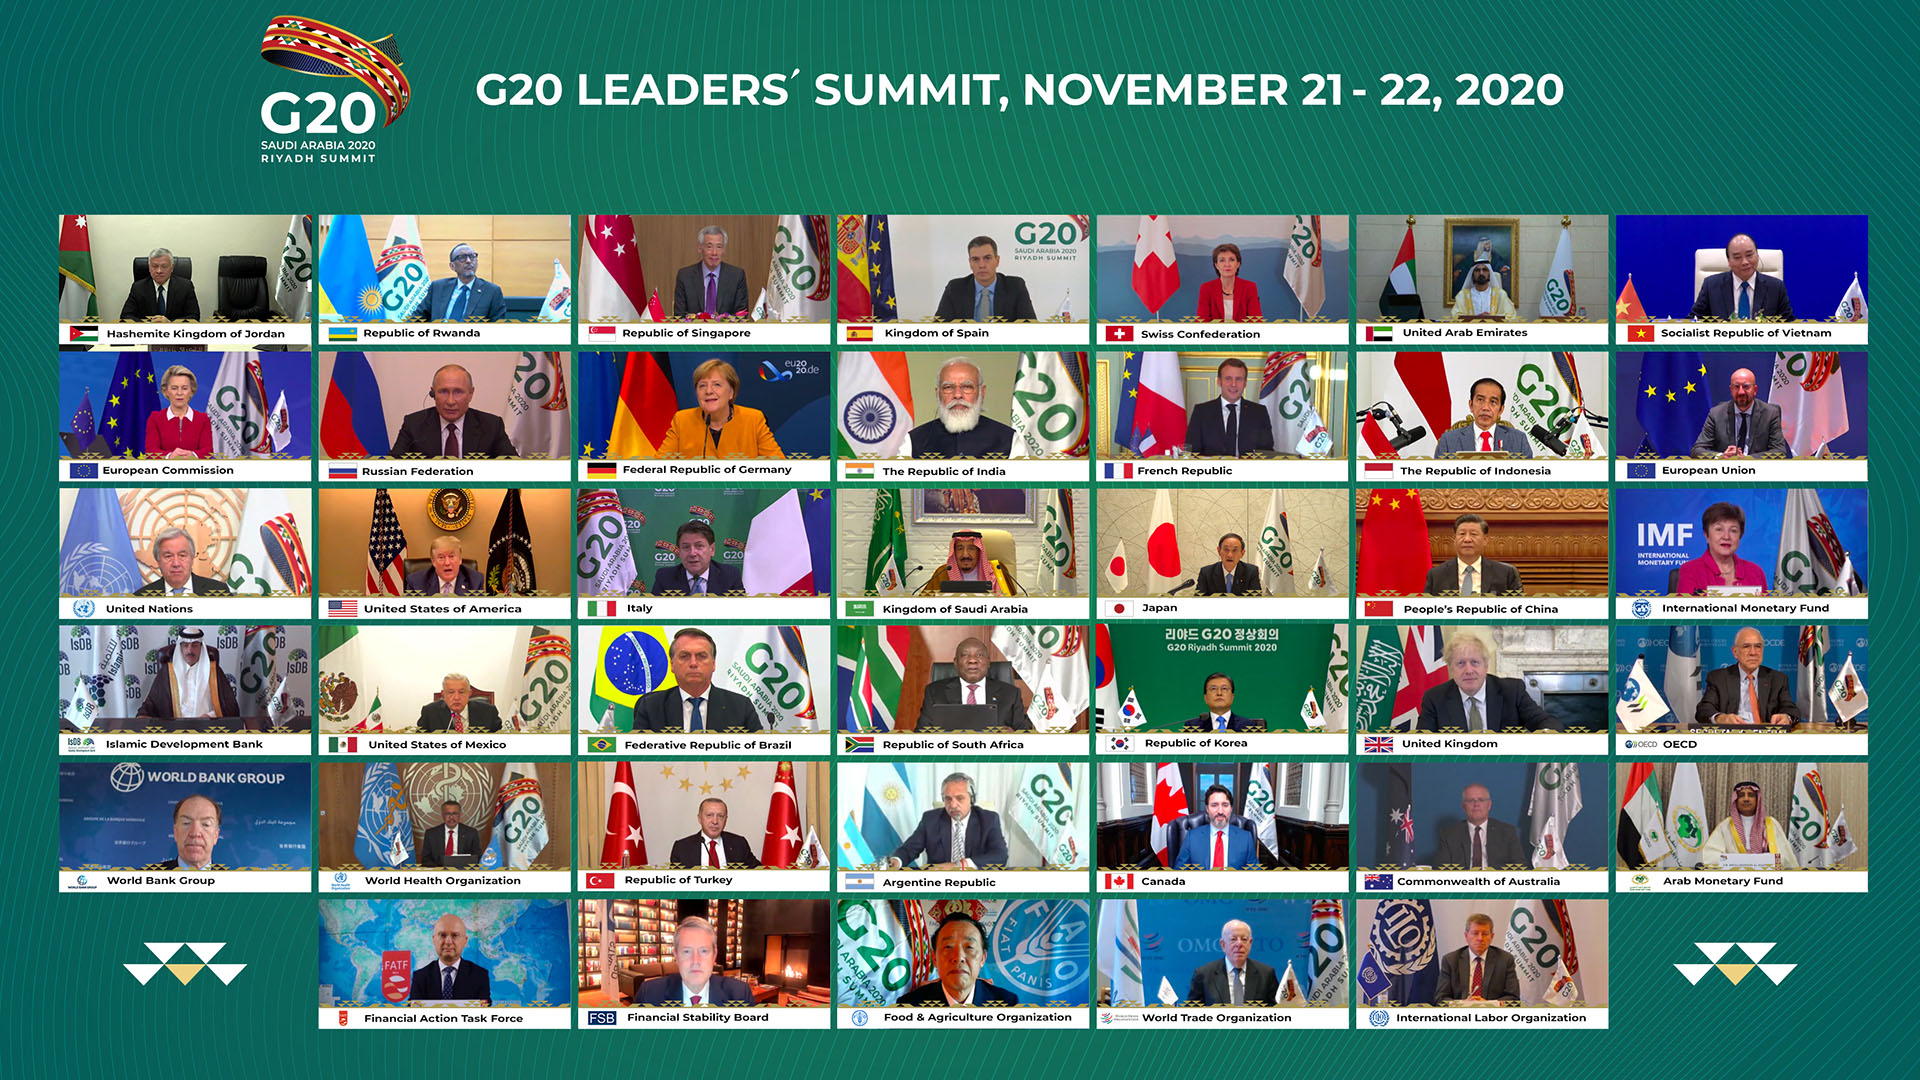 La atípica foto de familia del G20 que este año se realizó de forma virtual por la pandemia